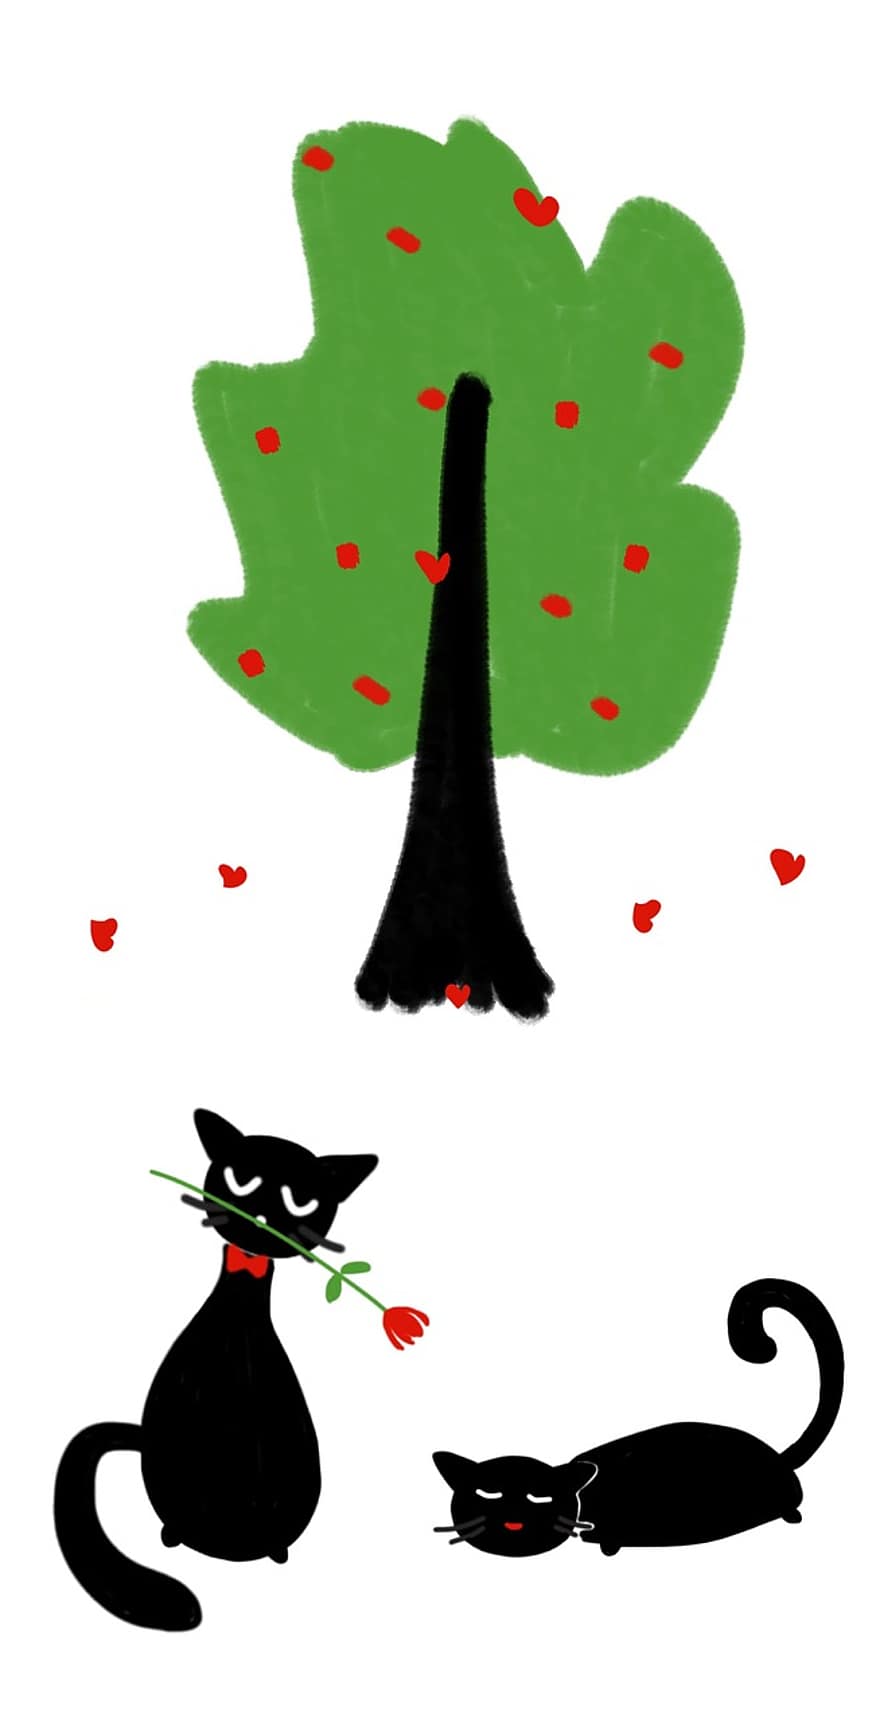 kucing, pohon, cinta, hari Valentine, jantung, pohon hijau, kucing jatuh cinta, kucing hitam, mawar, bunga, romantis